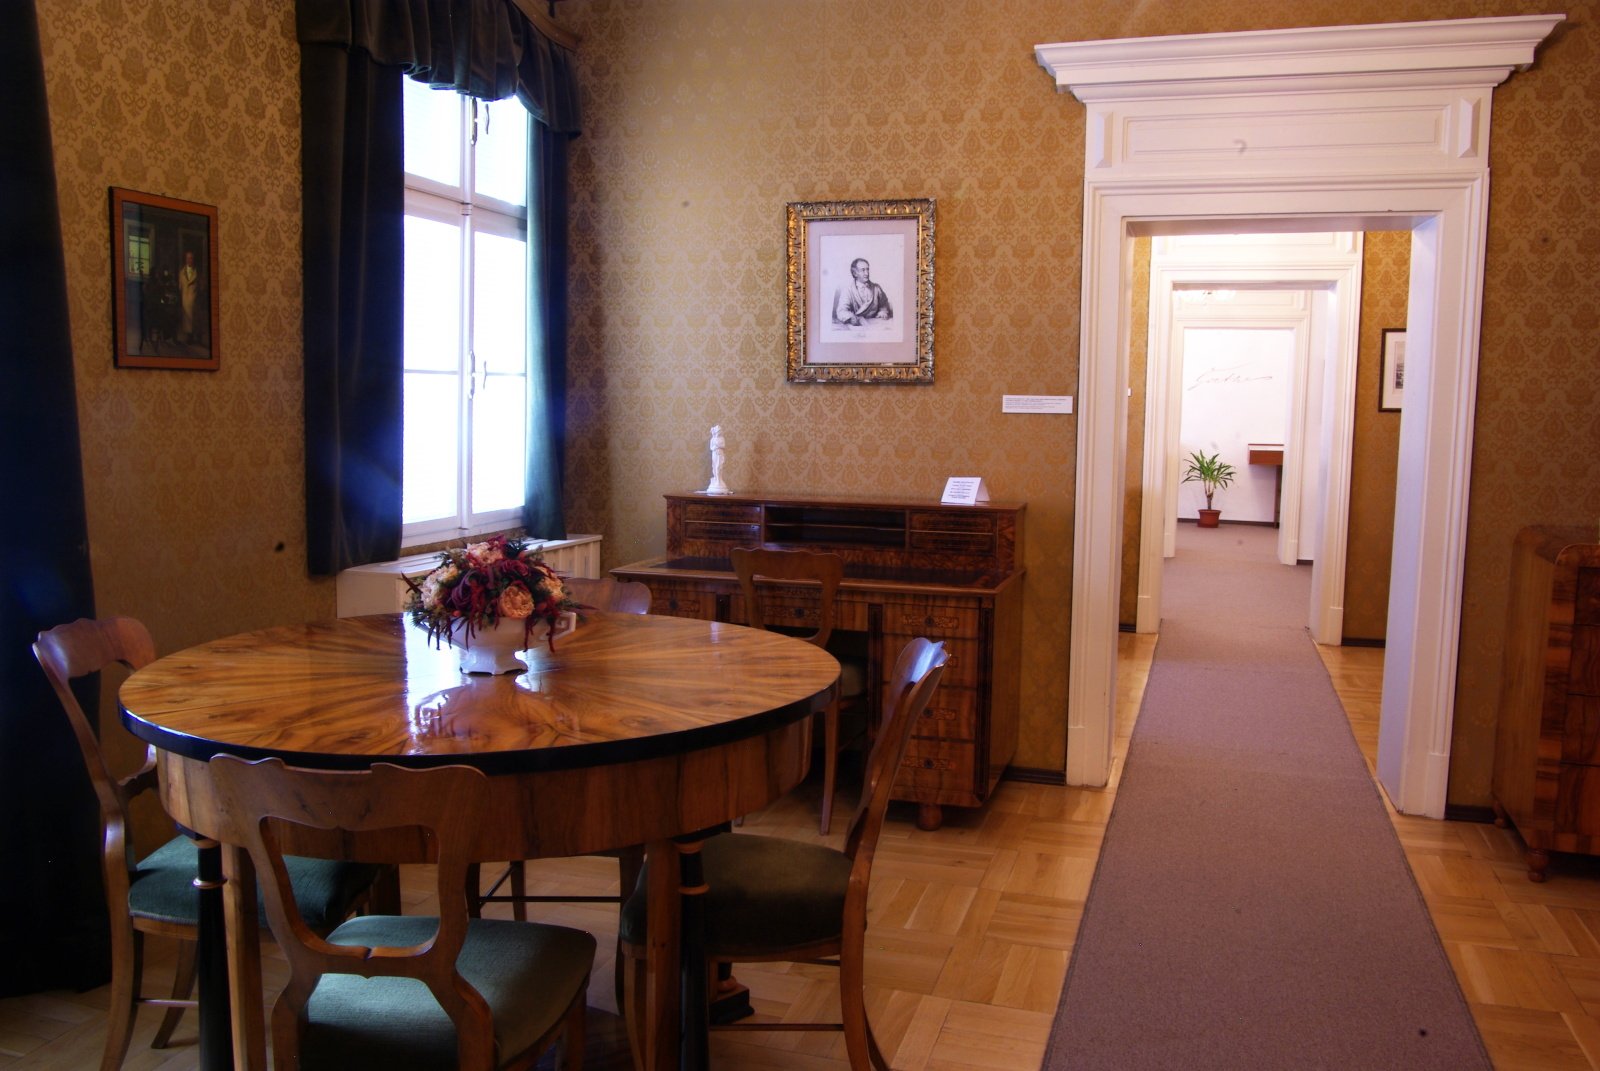 Mariánské Lázněn kunnallinen museo